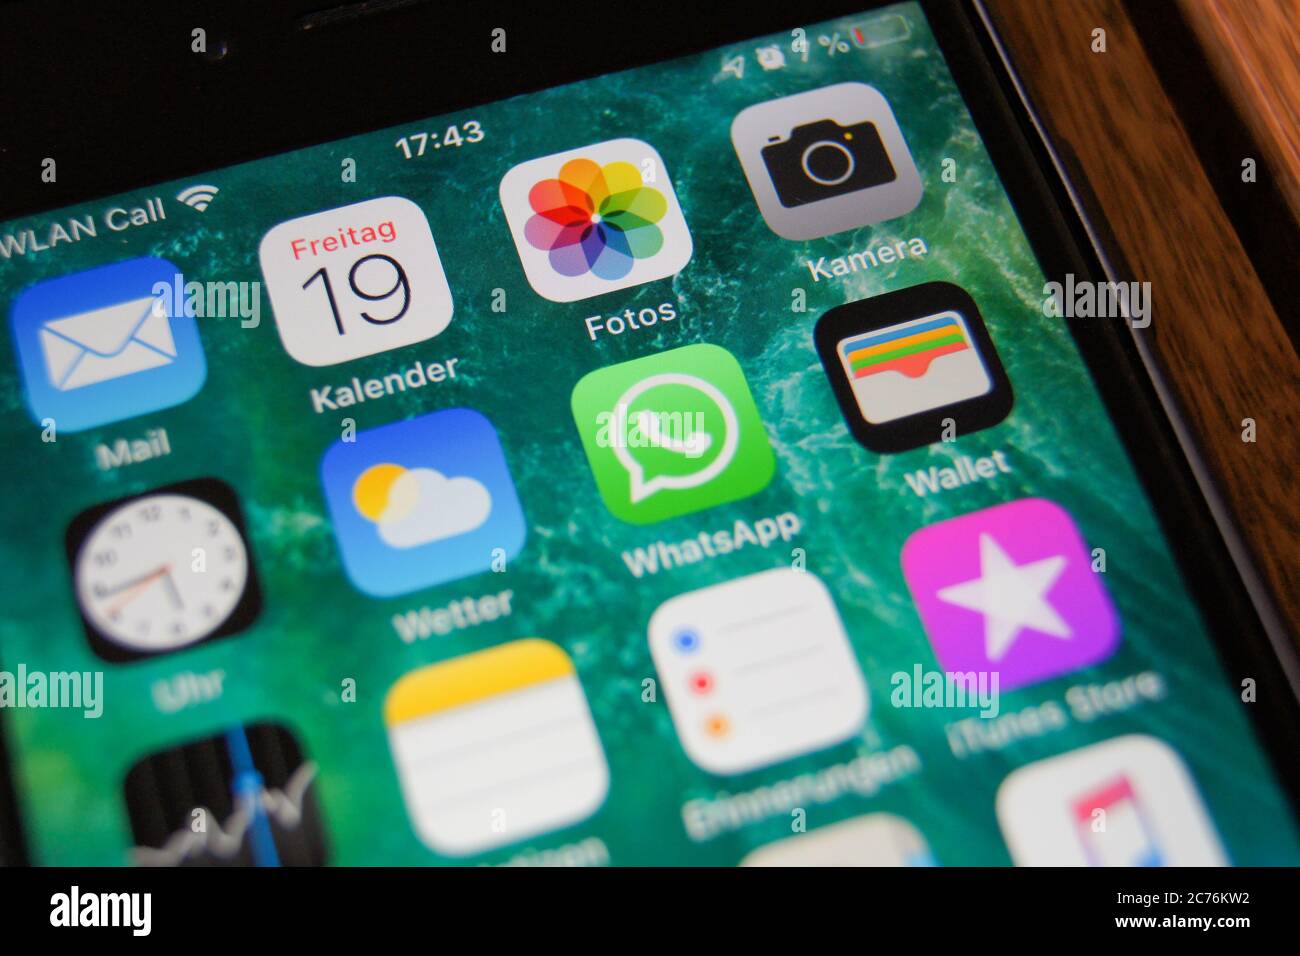 Primo piano della schermata iniziale di un iPhone Apple con icone di applicazioni come Mail, fotocamera, Foto, WhatsApp, Meteo, Orologio, azioni, portafoglio, Contatti e Musica. Foto Stock